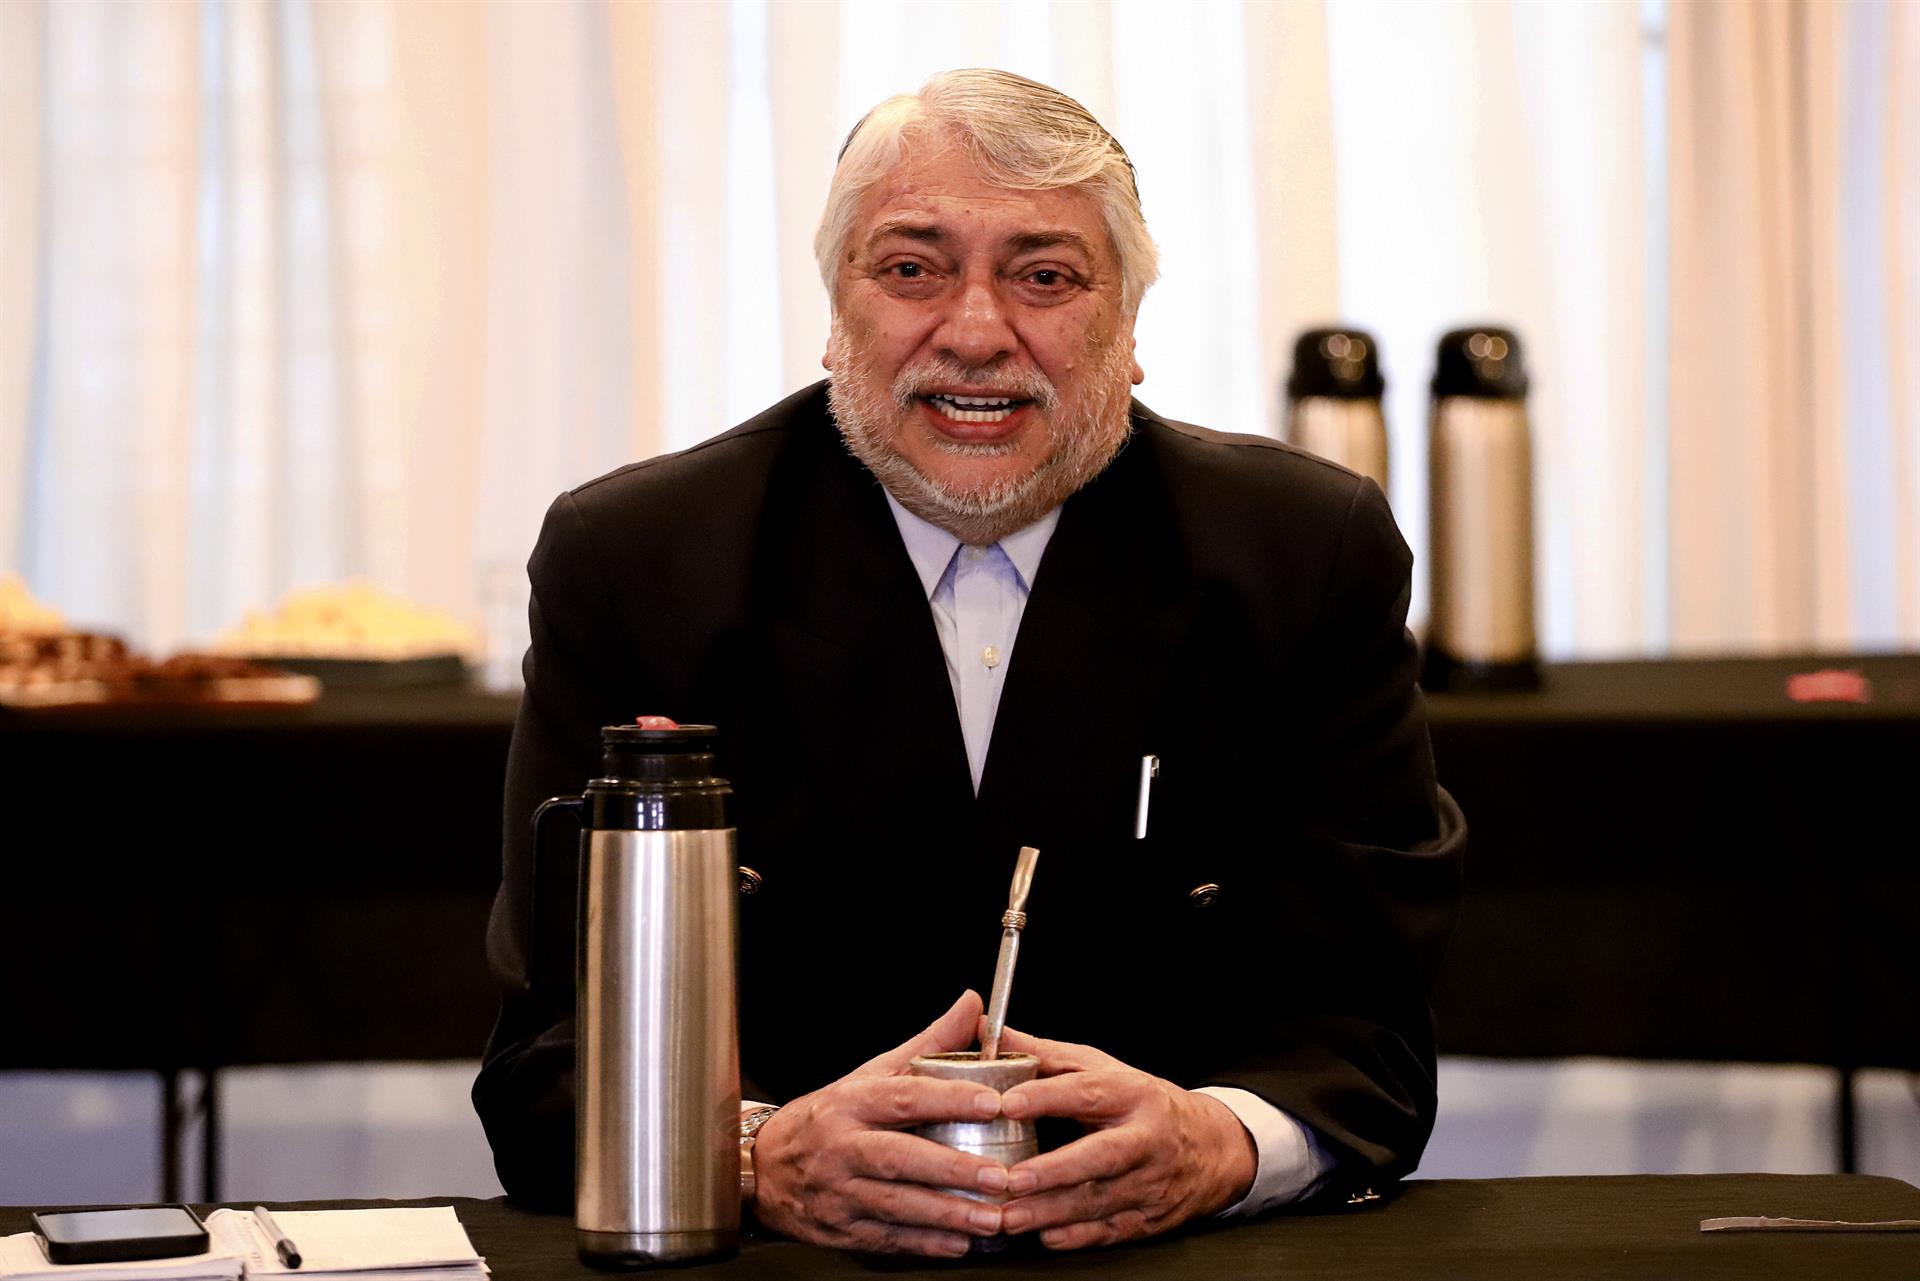 El senador y expresidente paraguayo Fernando Lugo (2008-2012), en una fotografía de archivo. EFE/Nathalia Aguilar